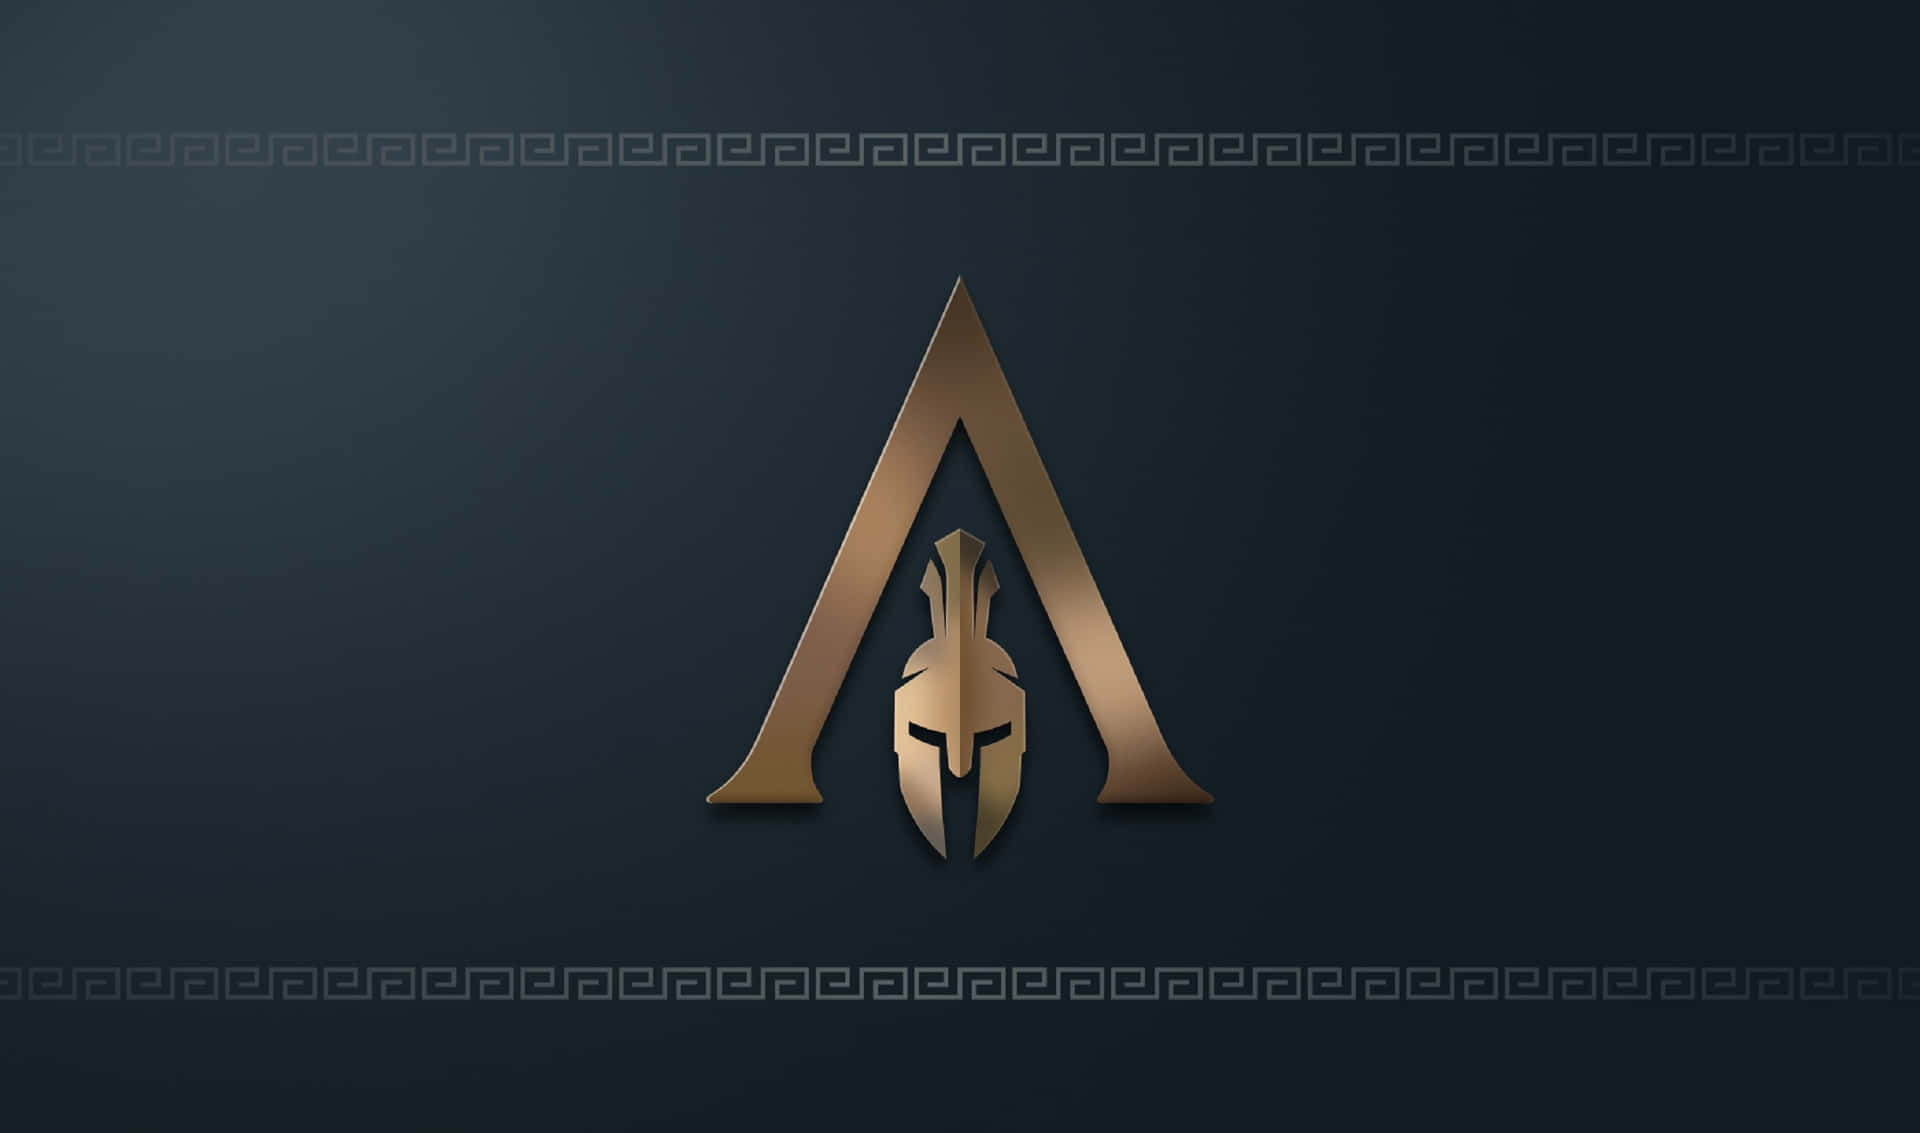 Fondode Pantalla De Assassin's Creed Odyssey En Resolución 2440x1440. Logo De Los Asesinos